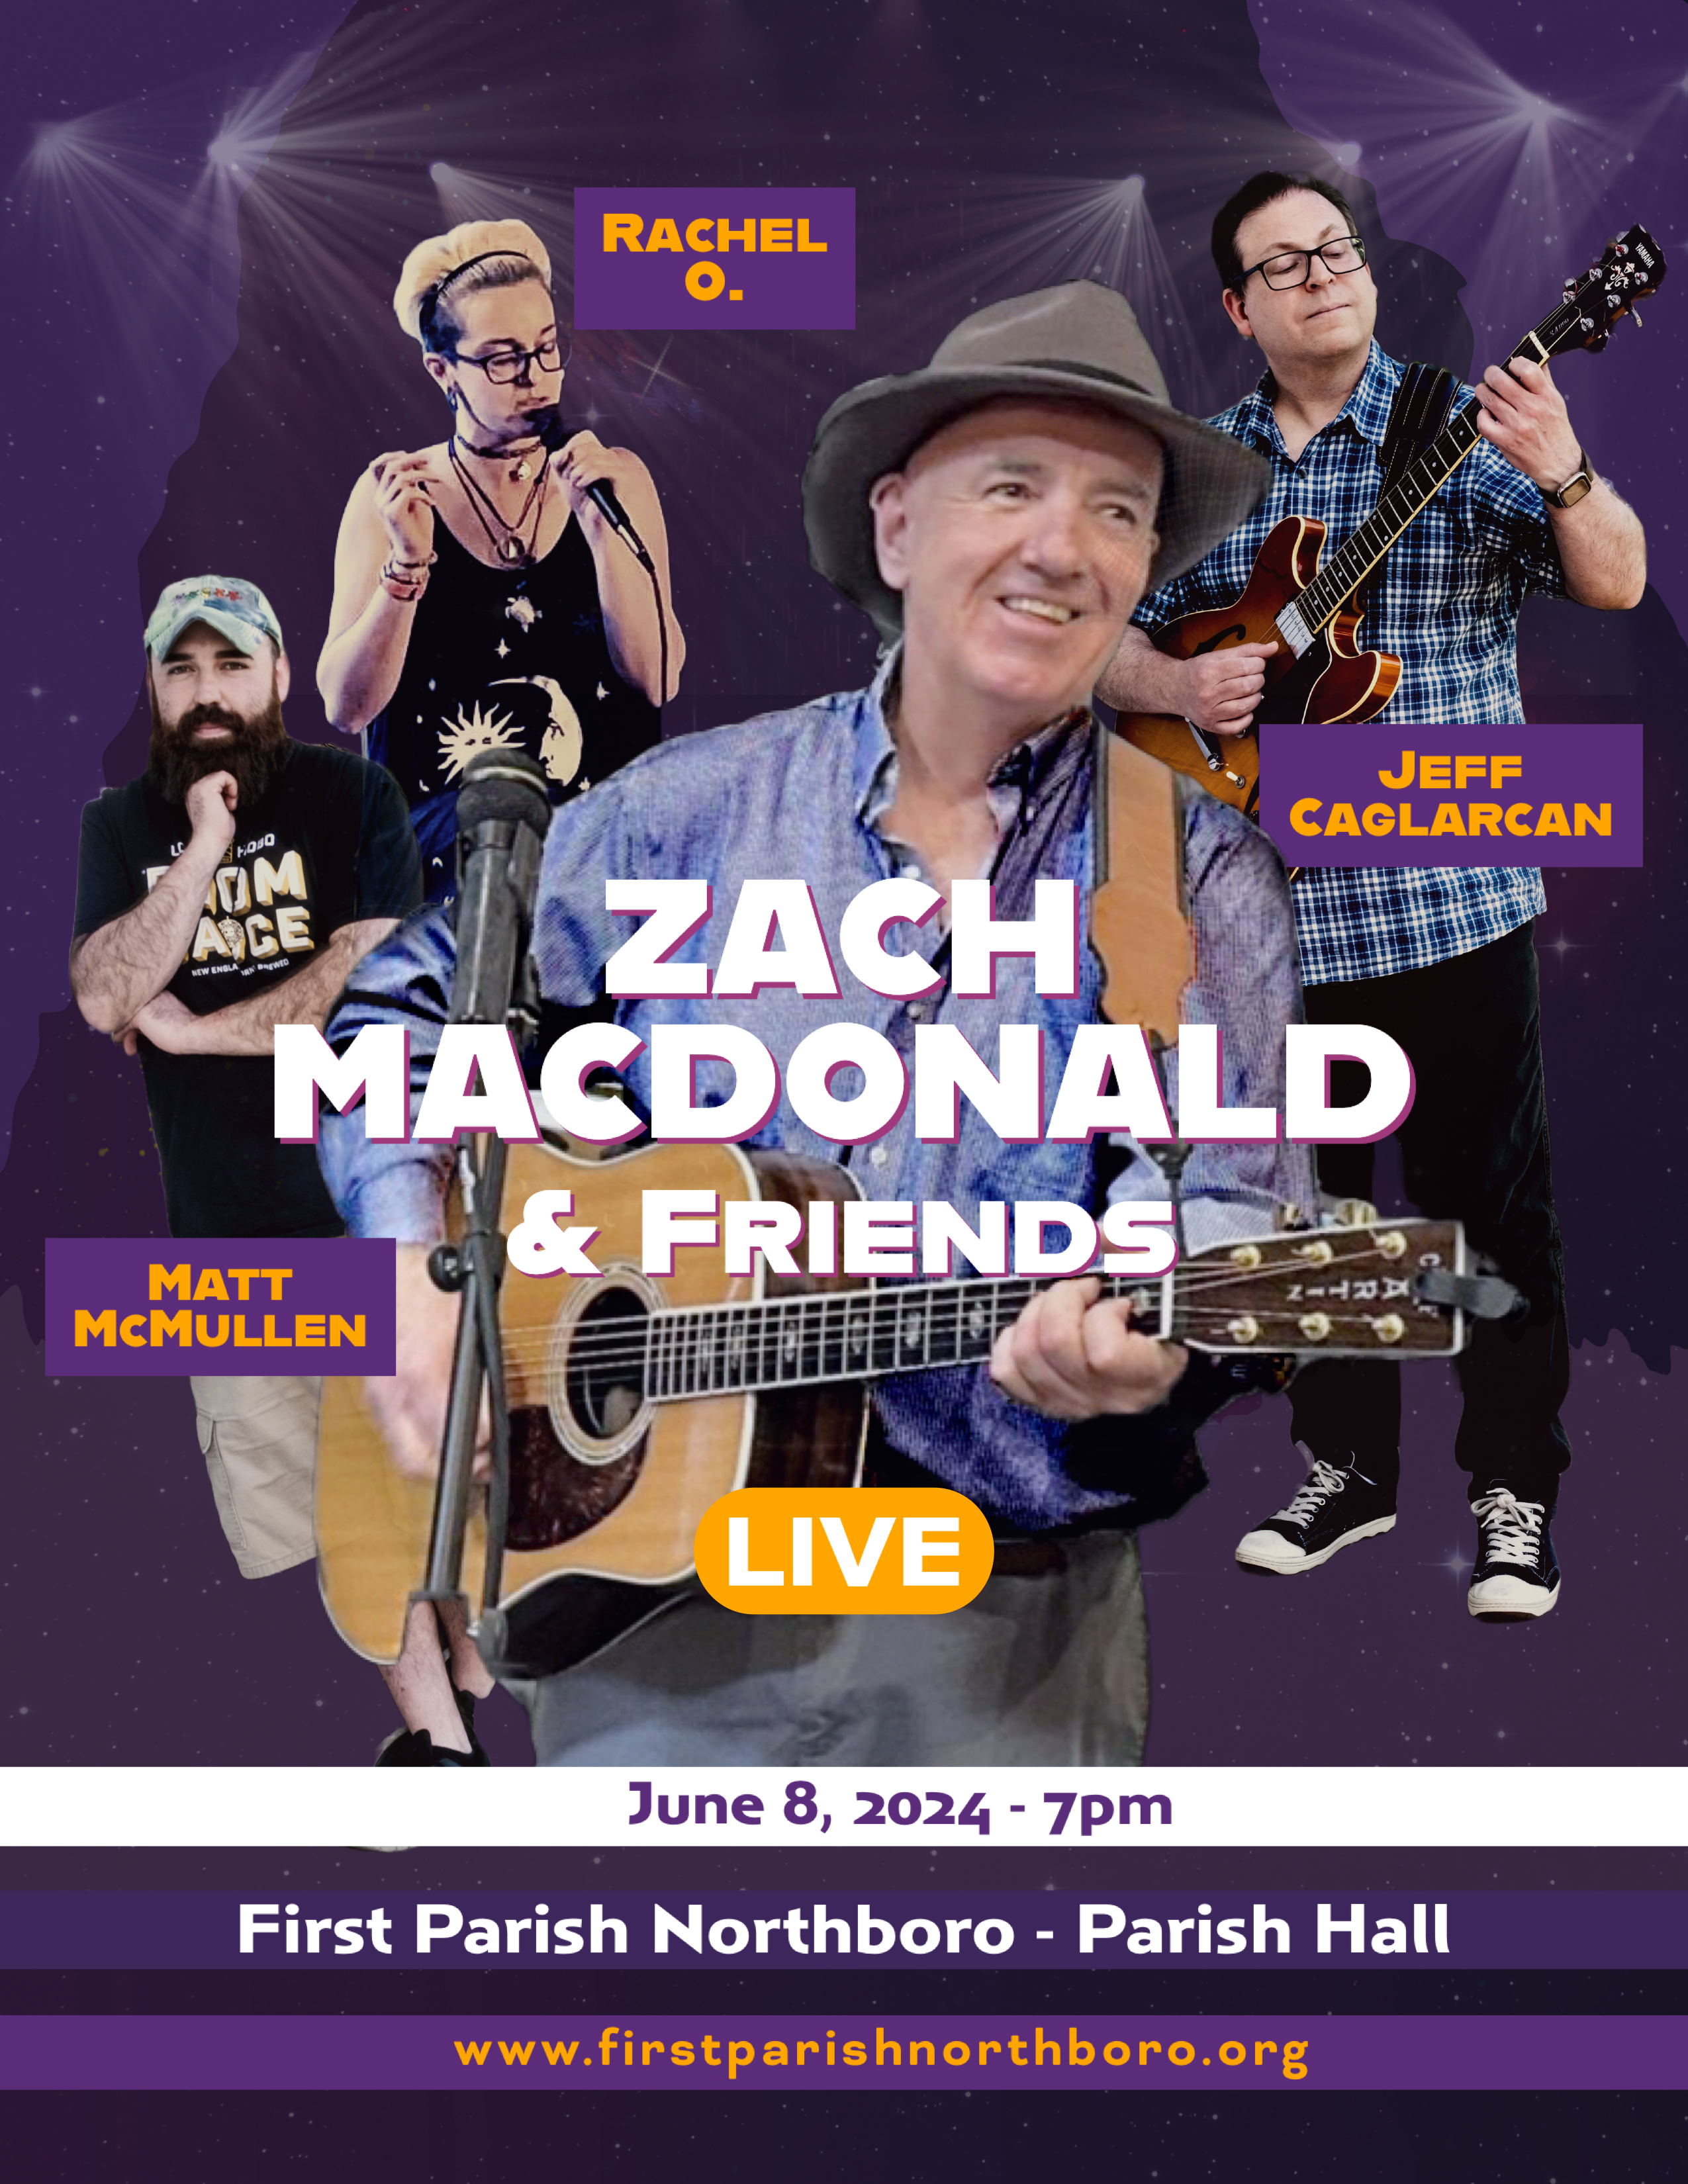 Zach MacDonald & Friends Concert